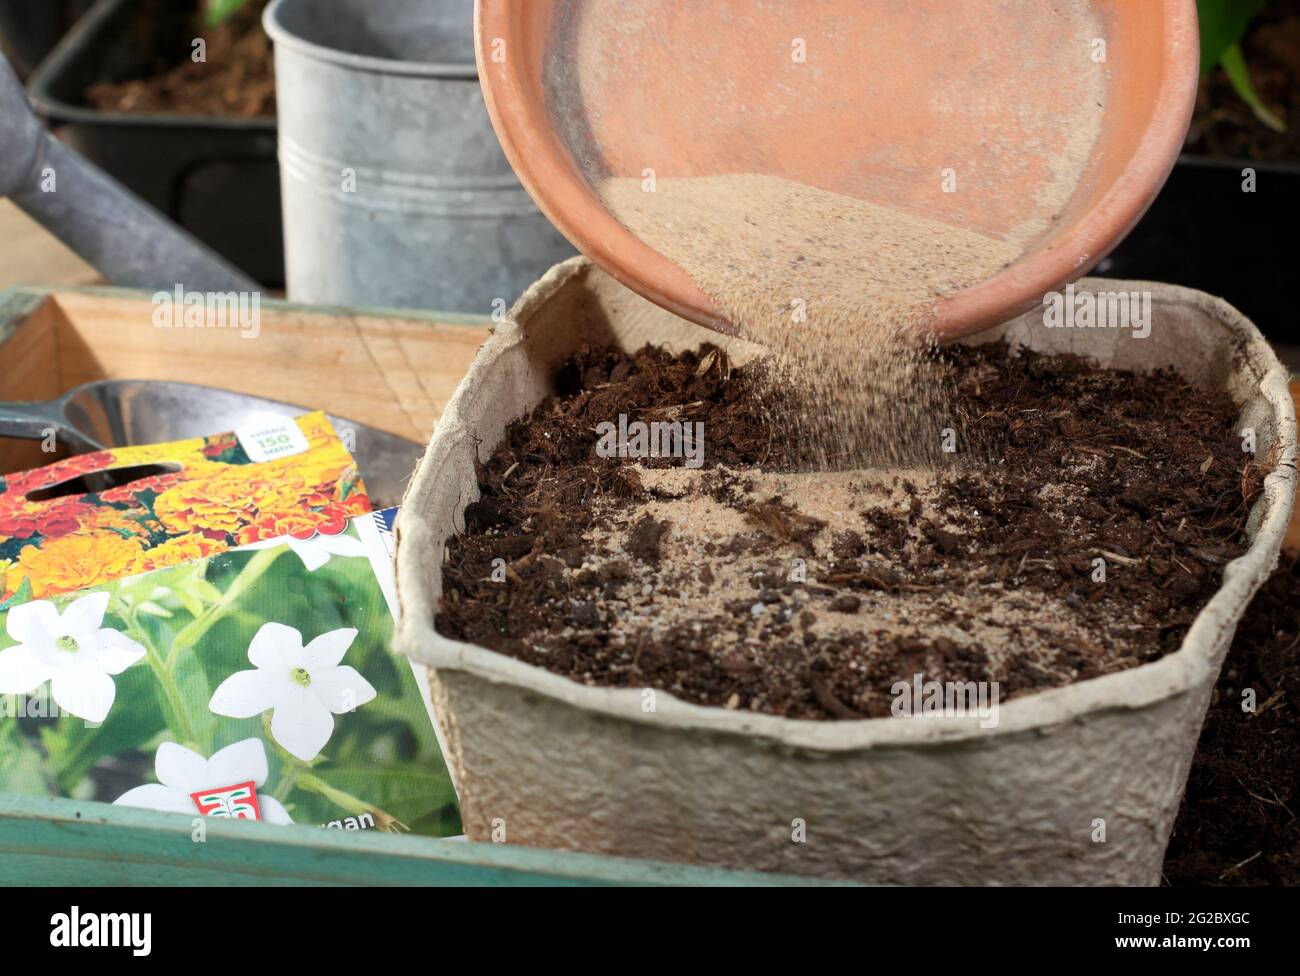 Semillas de flores finas mezcladas con arena hortícola para facilitar una distribución uniforme antes de sembrar en una bandeja - Nicotiana x sanderae 'Nube de fragantes' Foto de stock